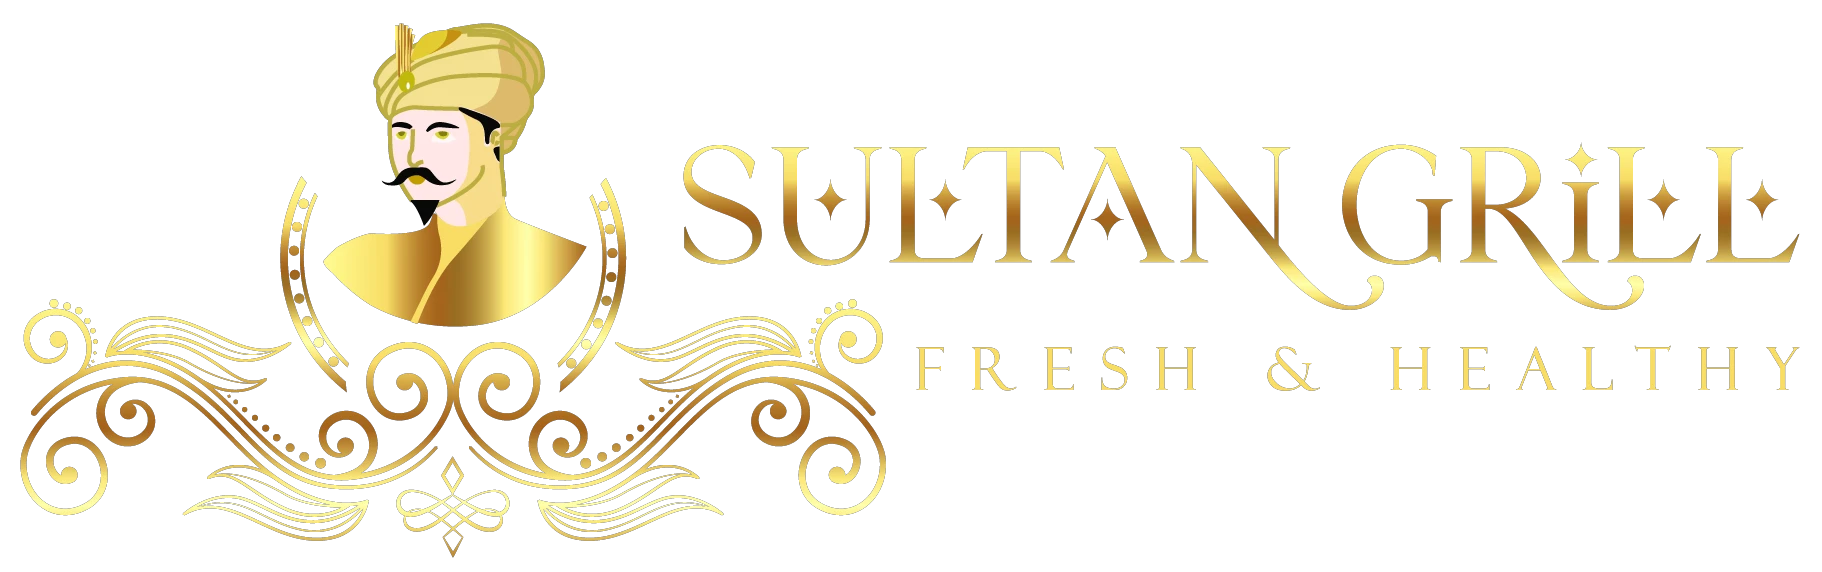 sultangrill.com